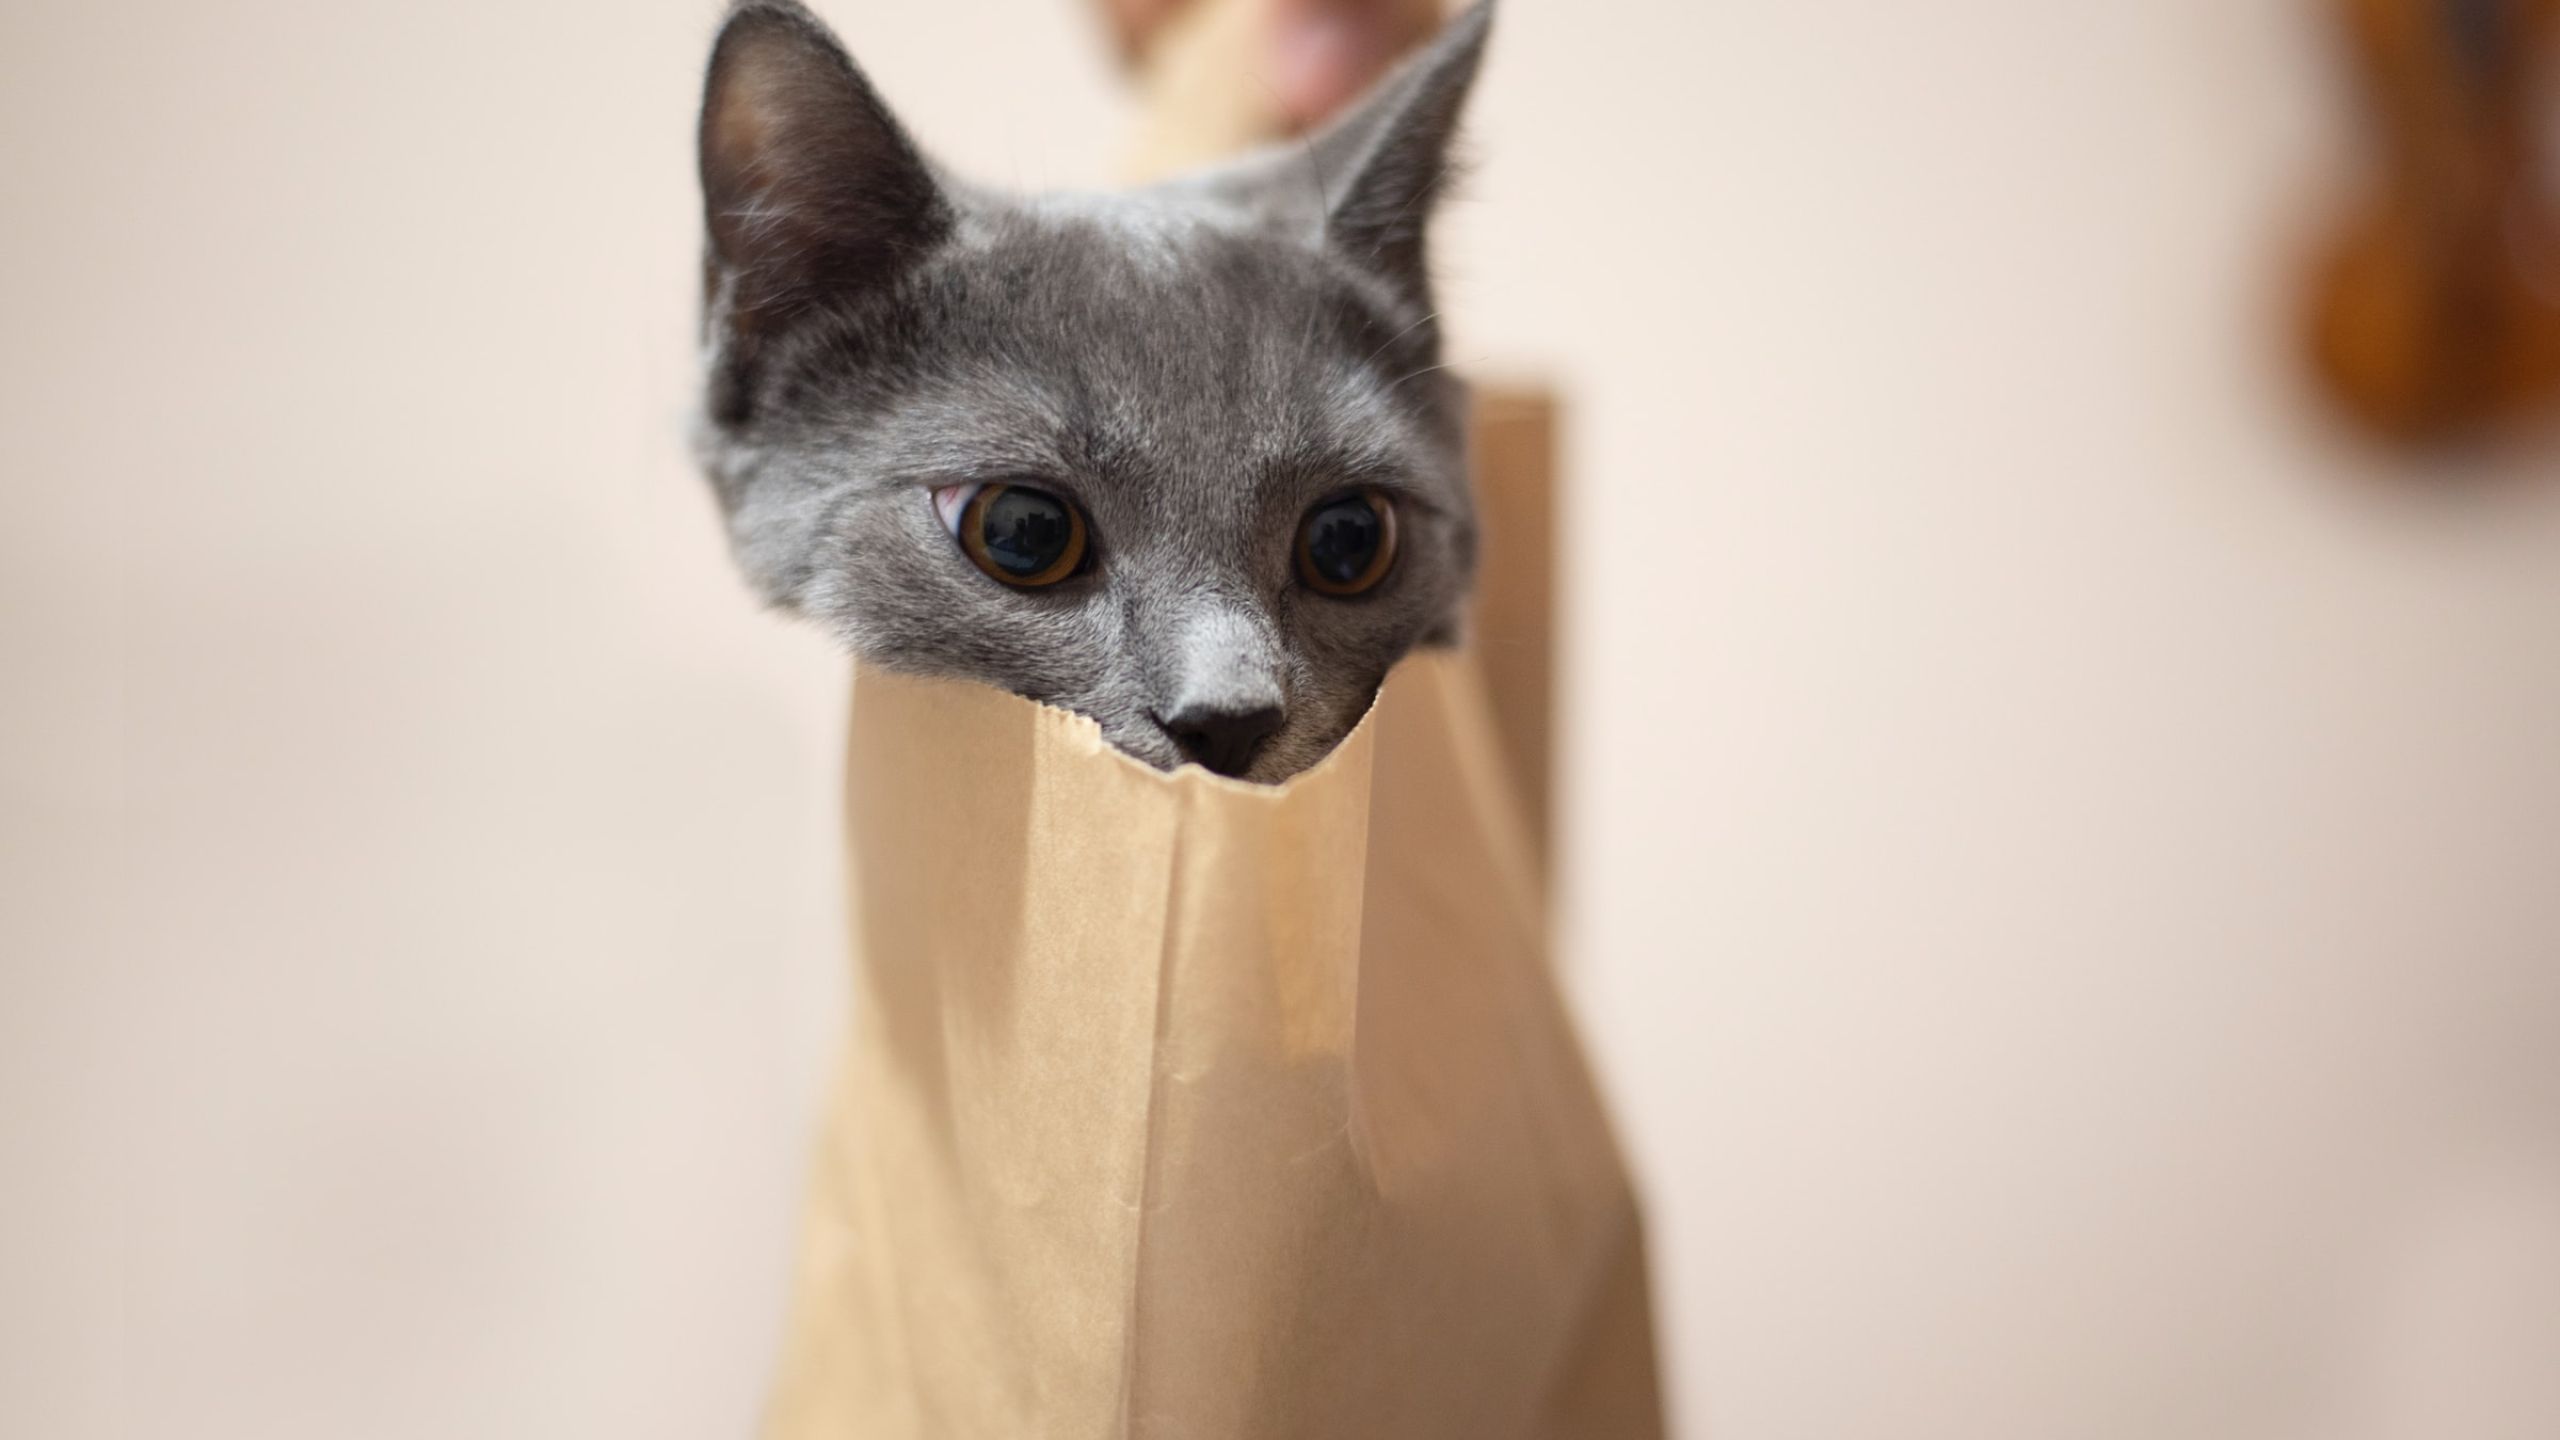 Katze schaut aus dem Sack in dem sie gekauft wurde